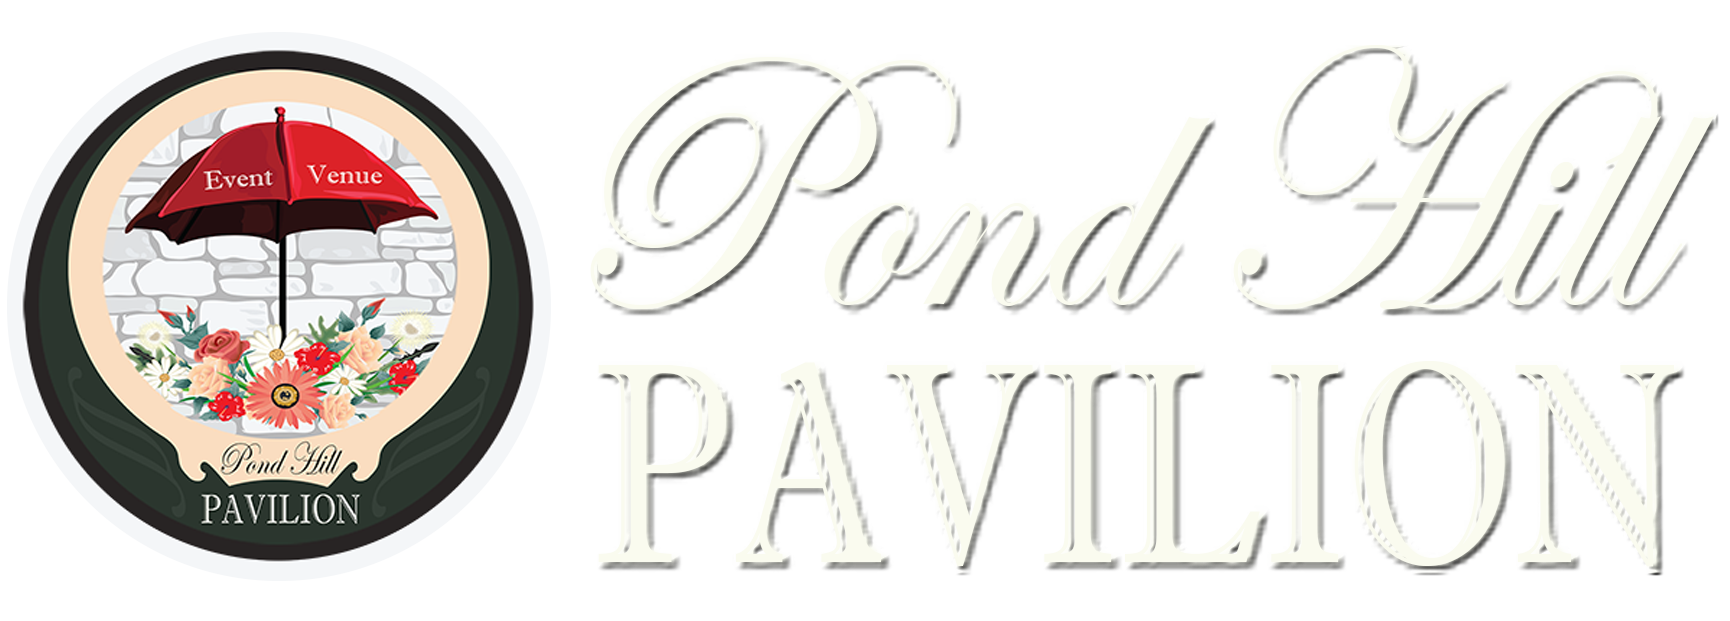 Pond Hill Pavilion Wedding Venue